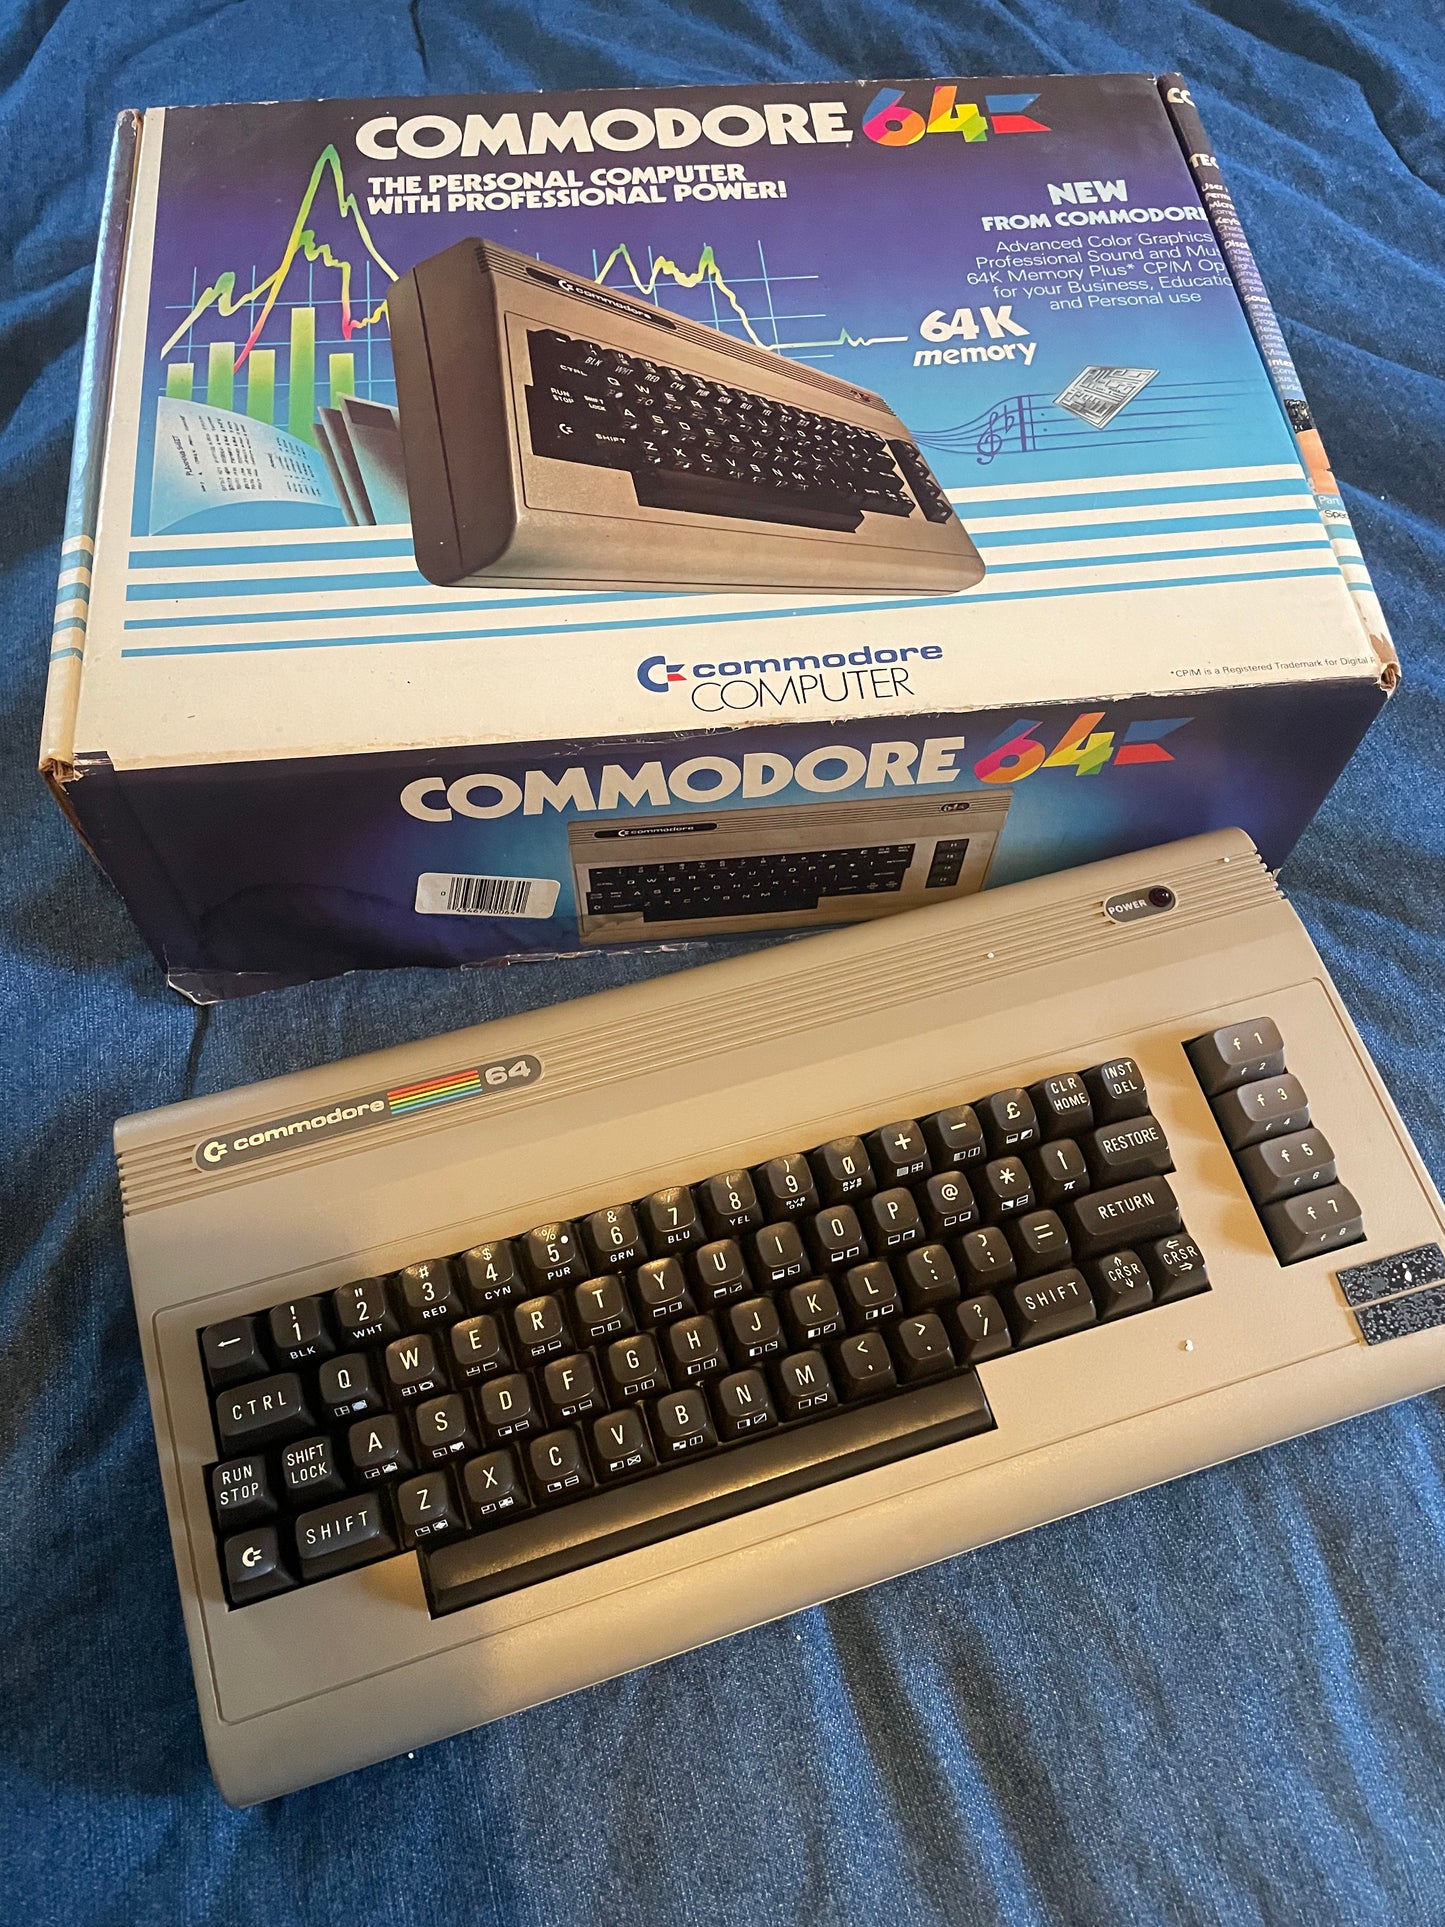 COMMODORE 64 COMPUTER (COMMODORE 64)